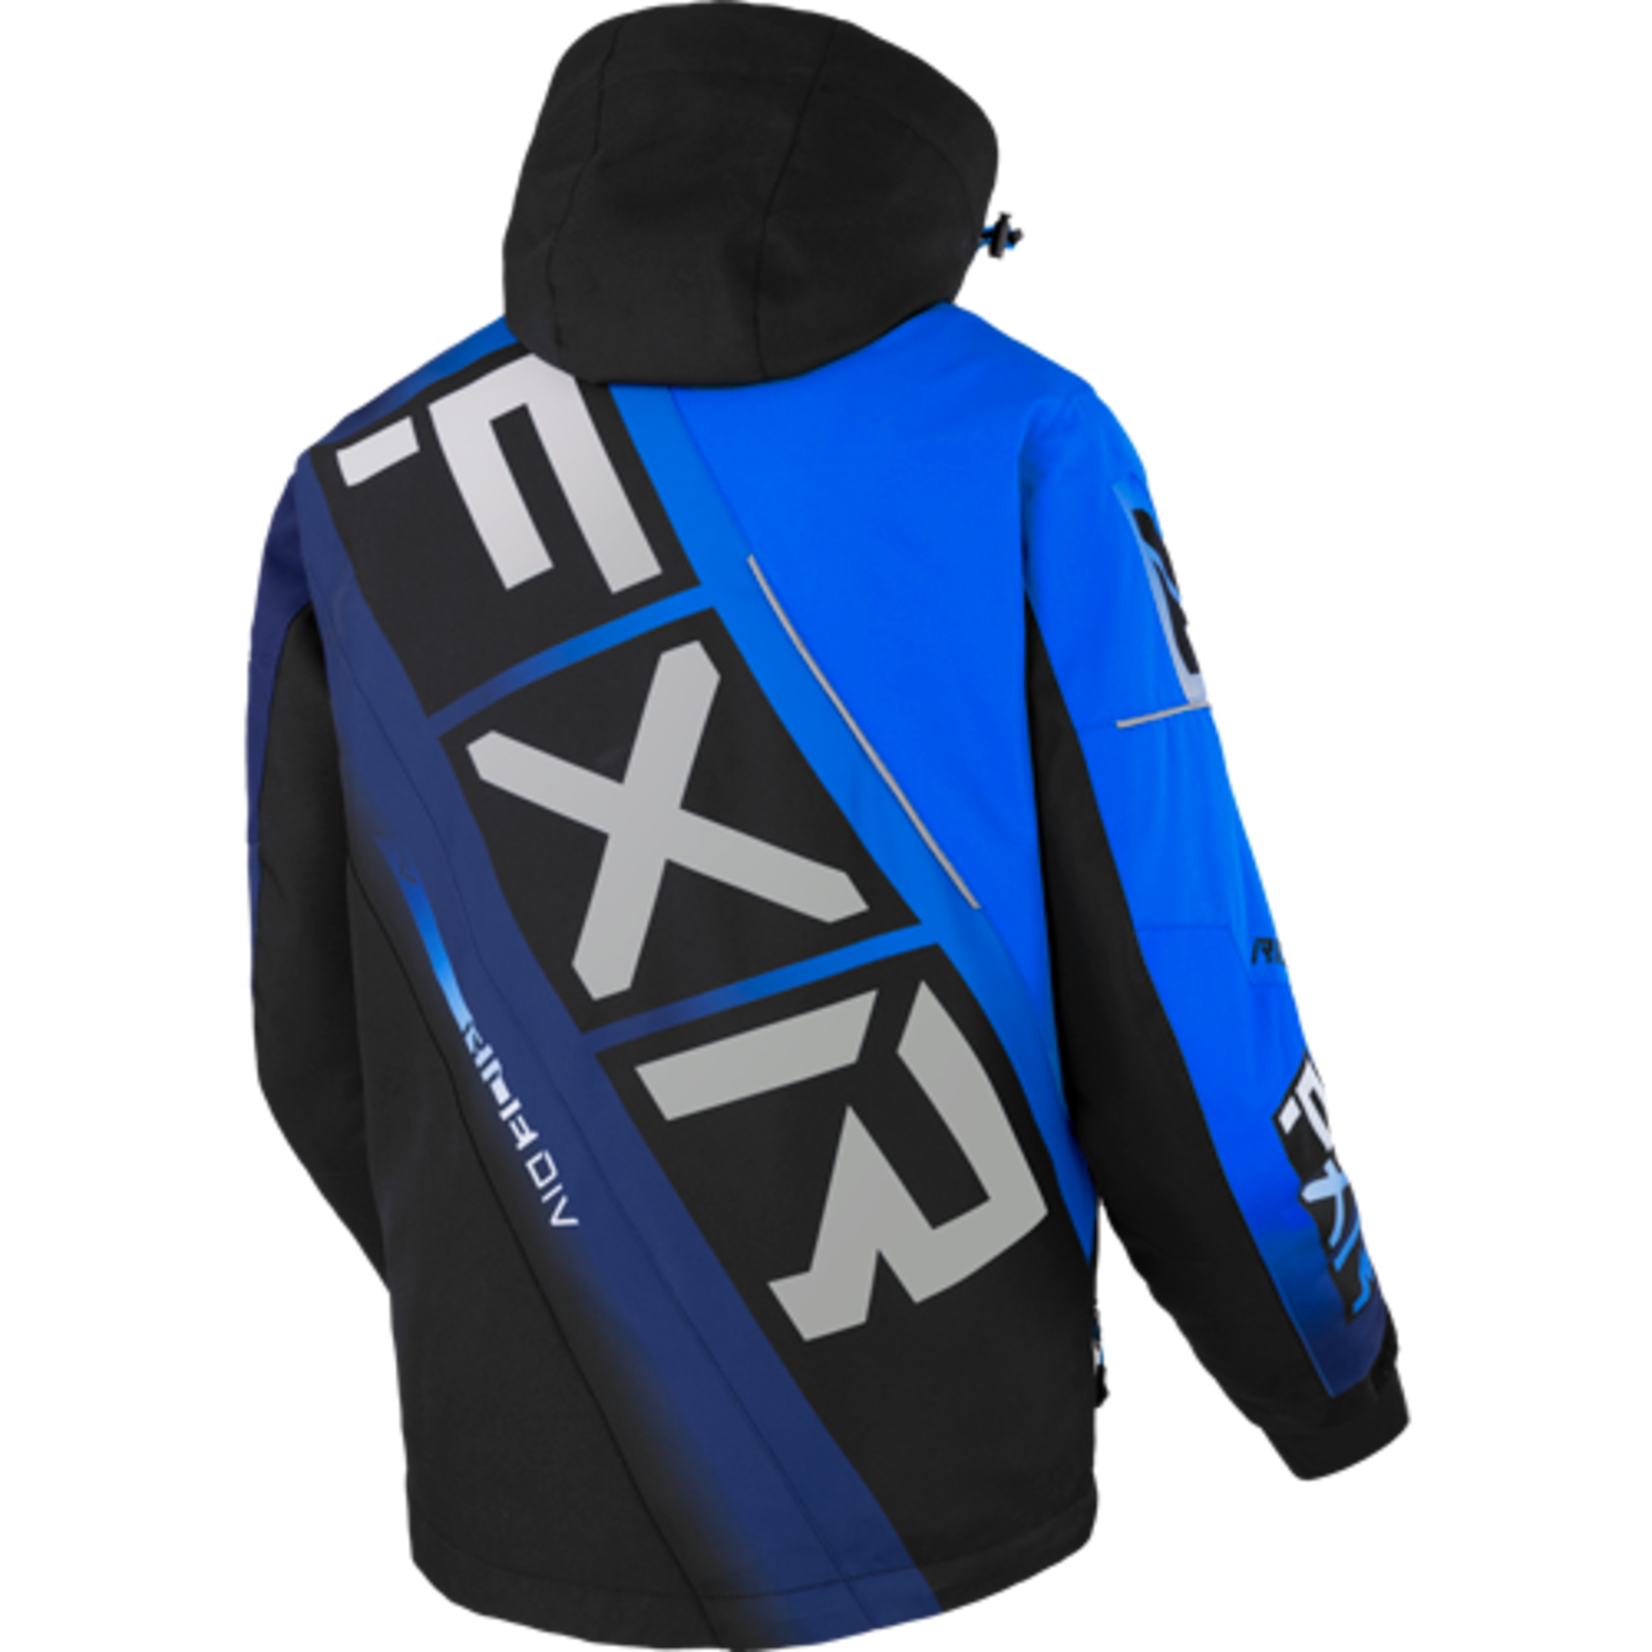 FXR FXR Winter Jacket, CX, Mens